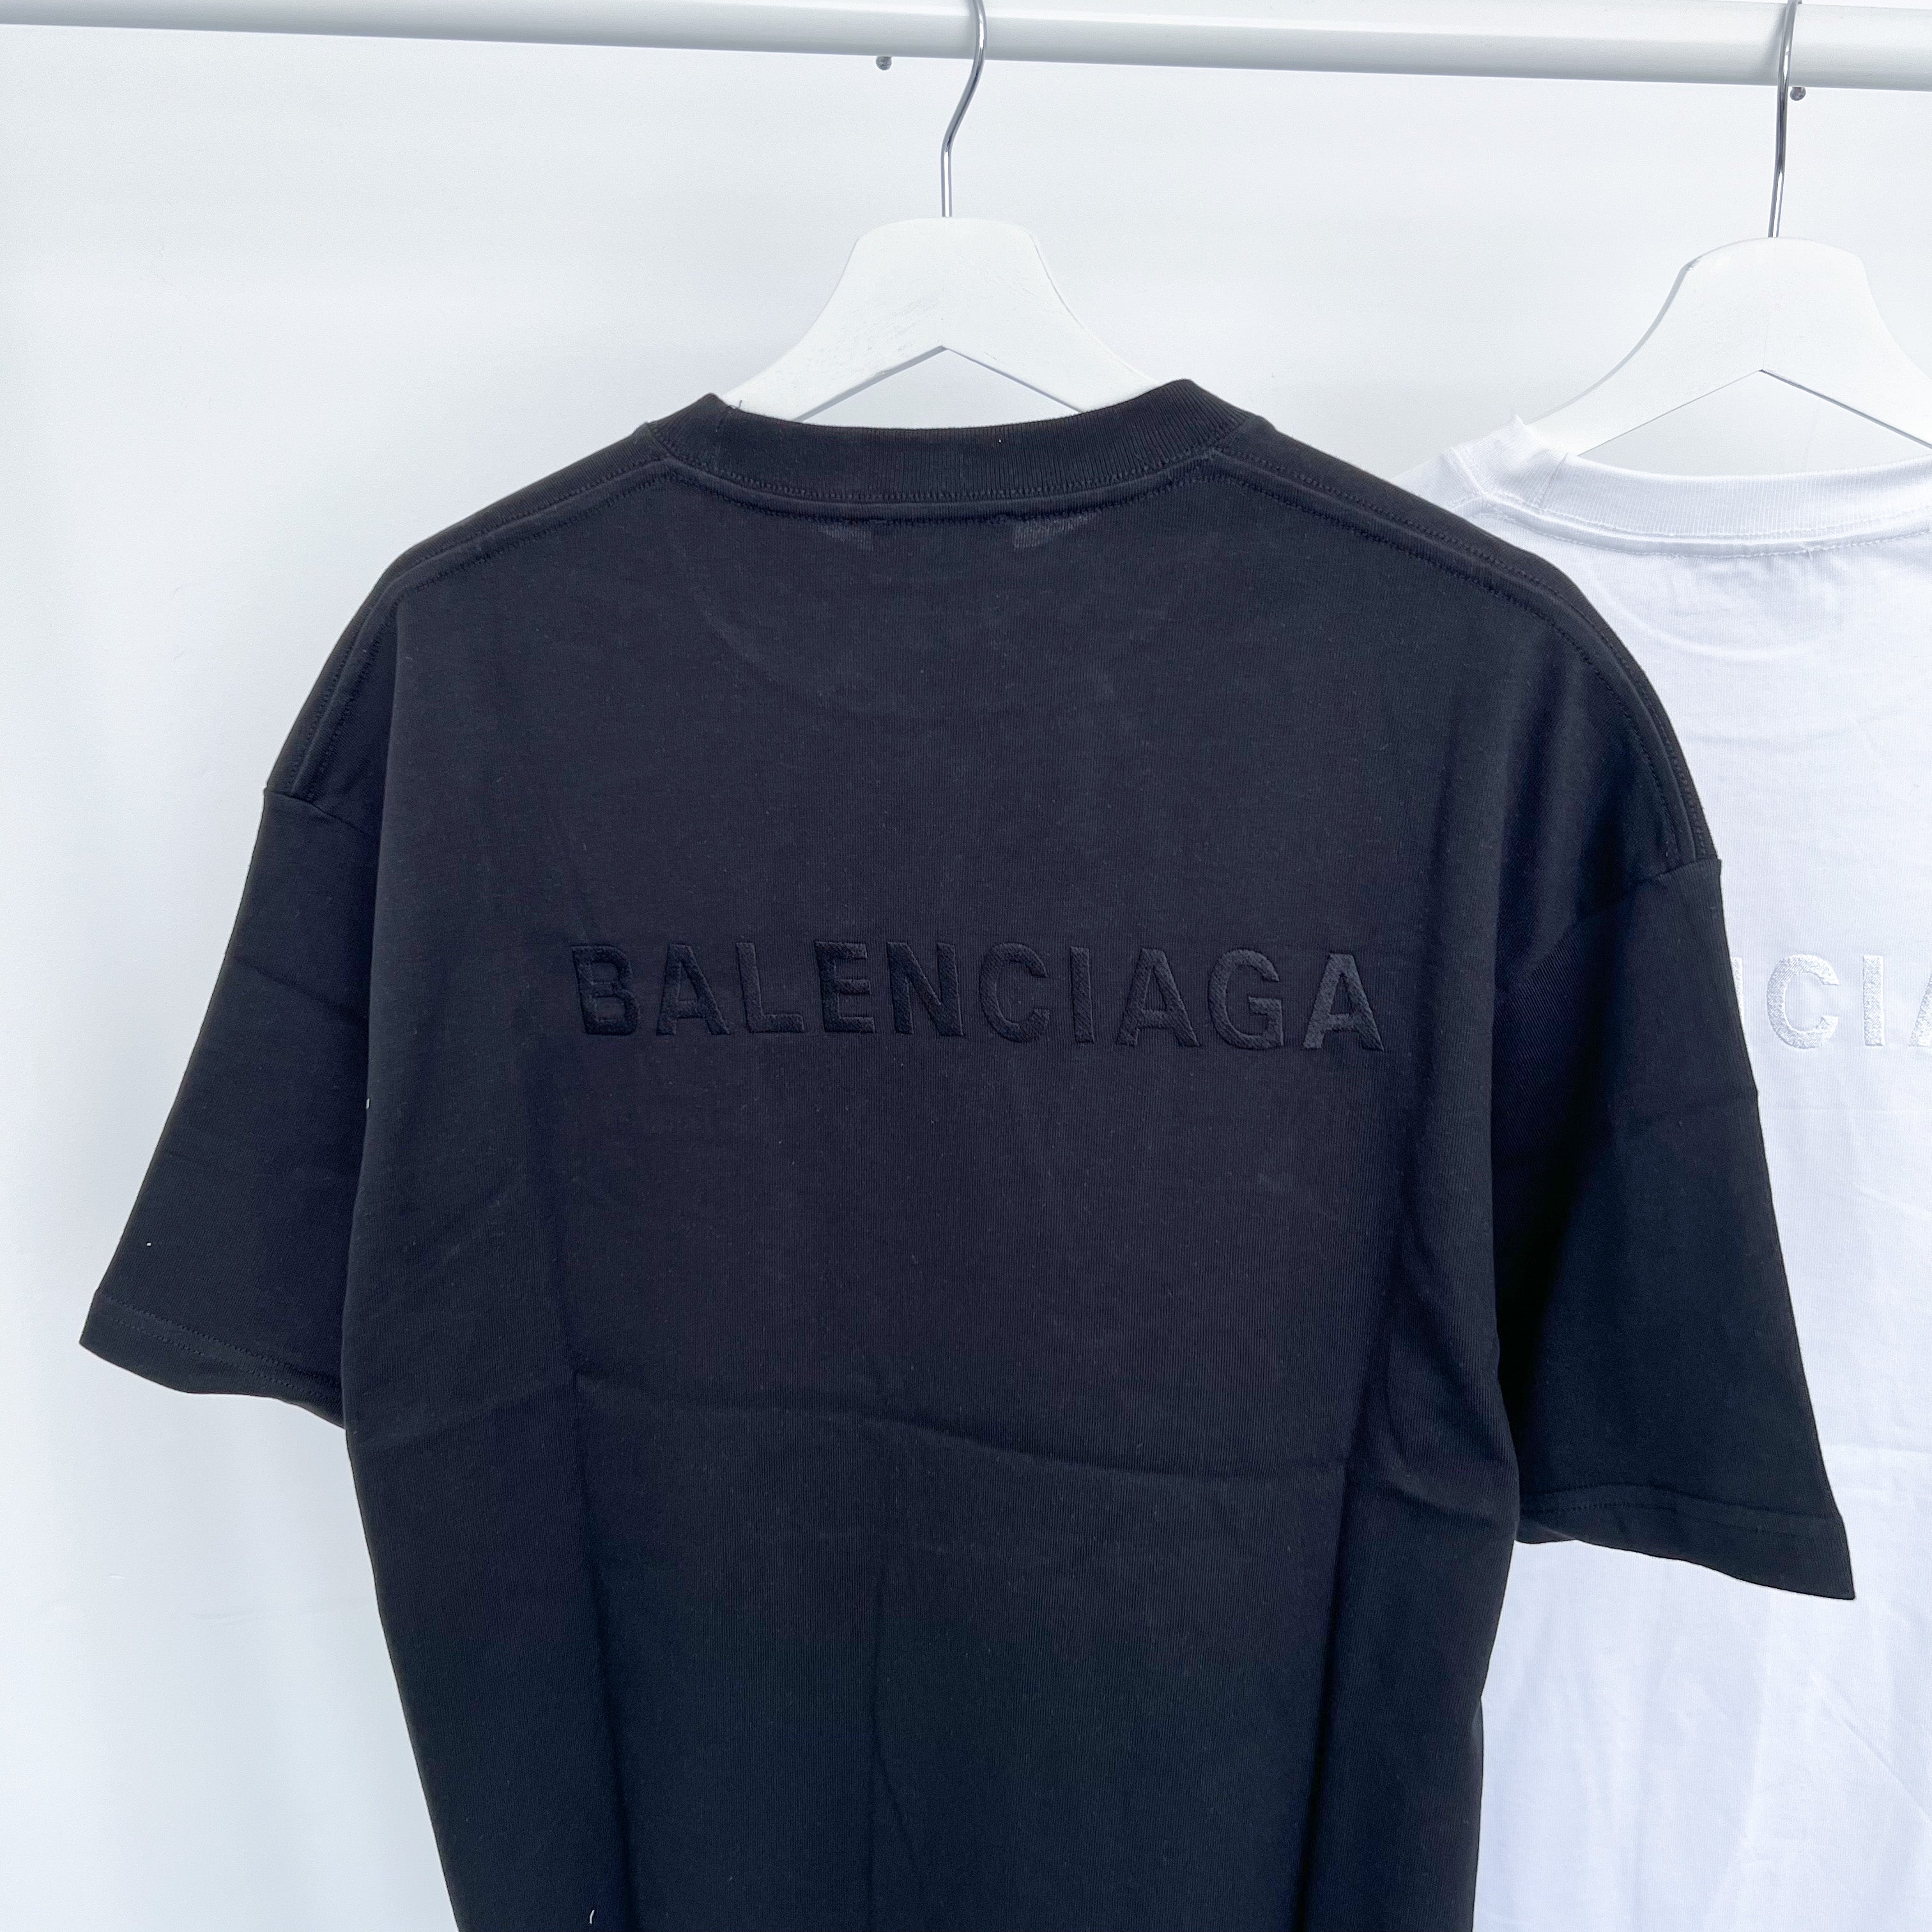 Balenciaga Embroidered Back Logo Tee - Black